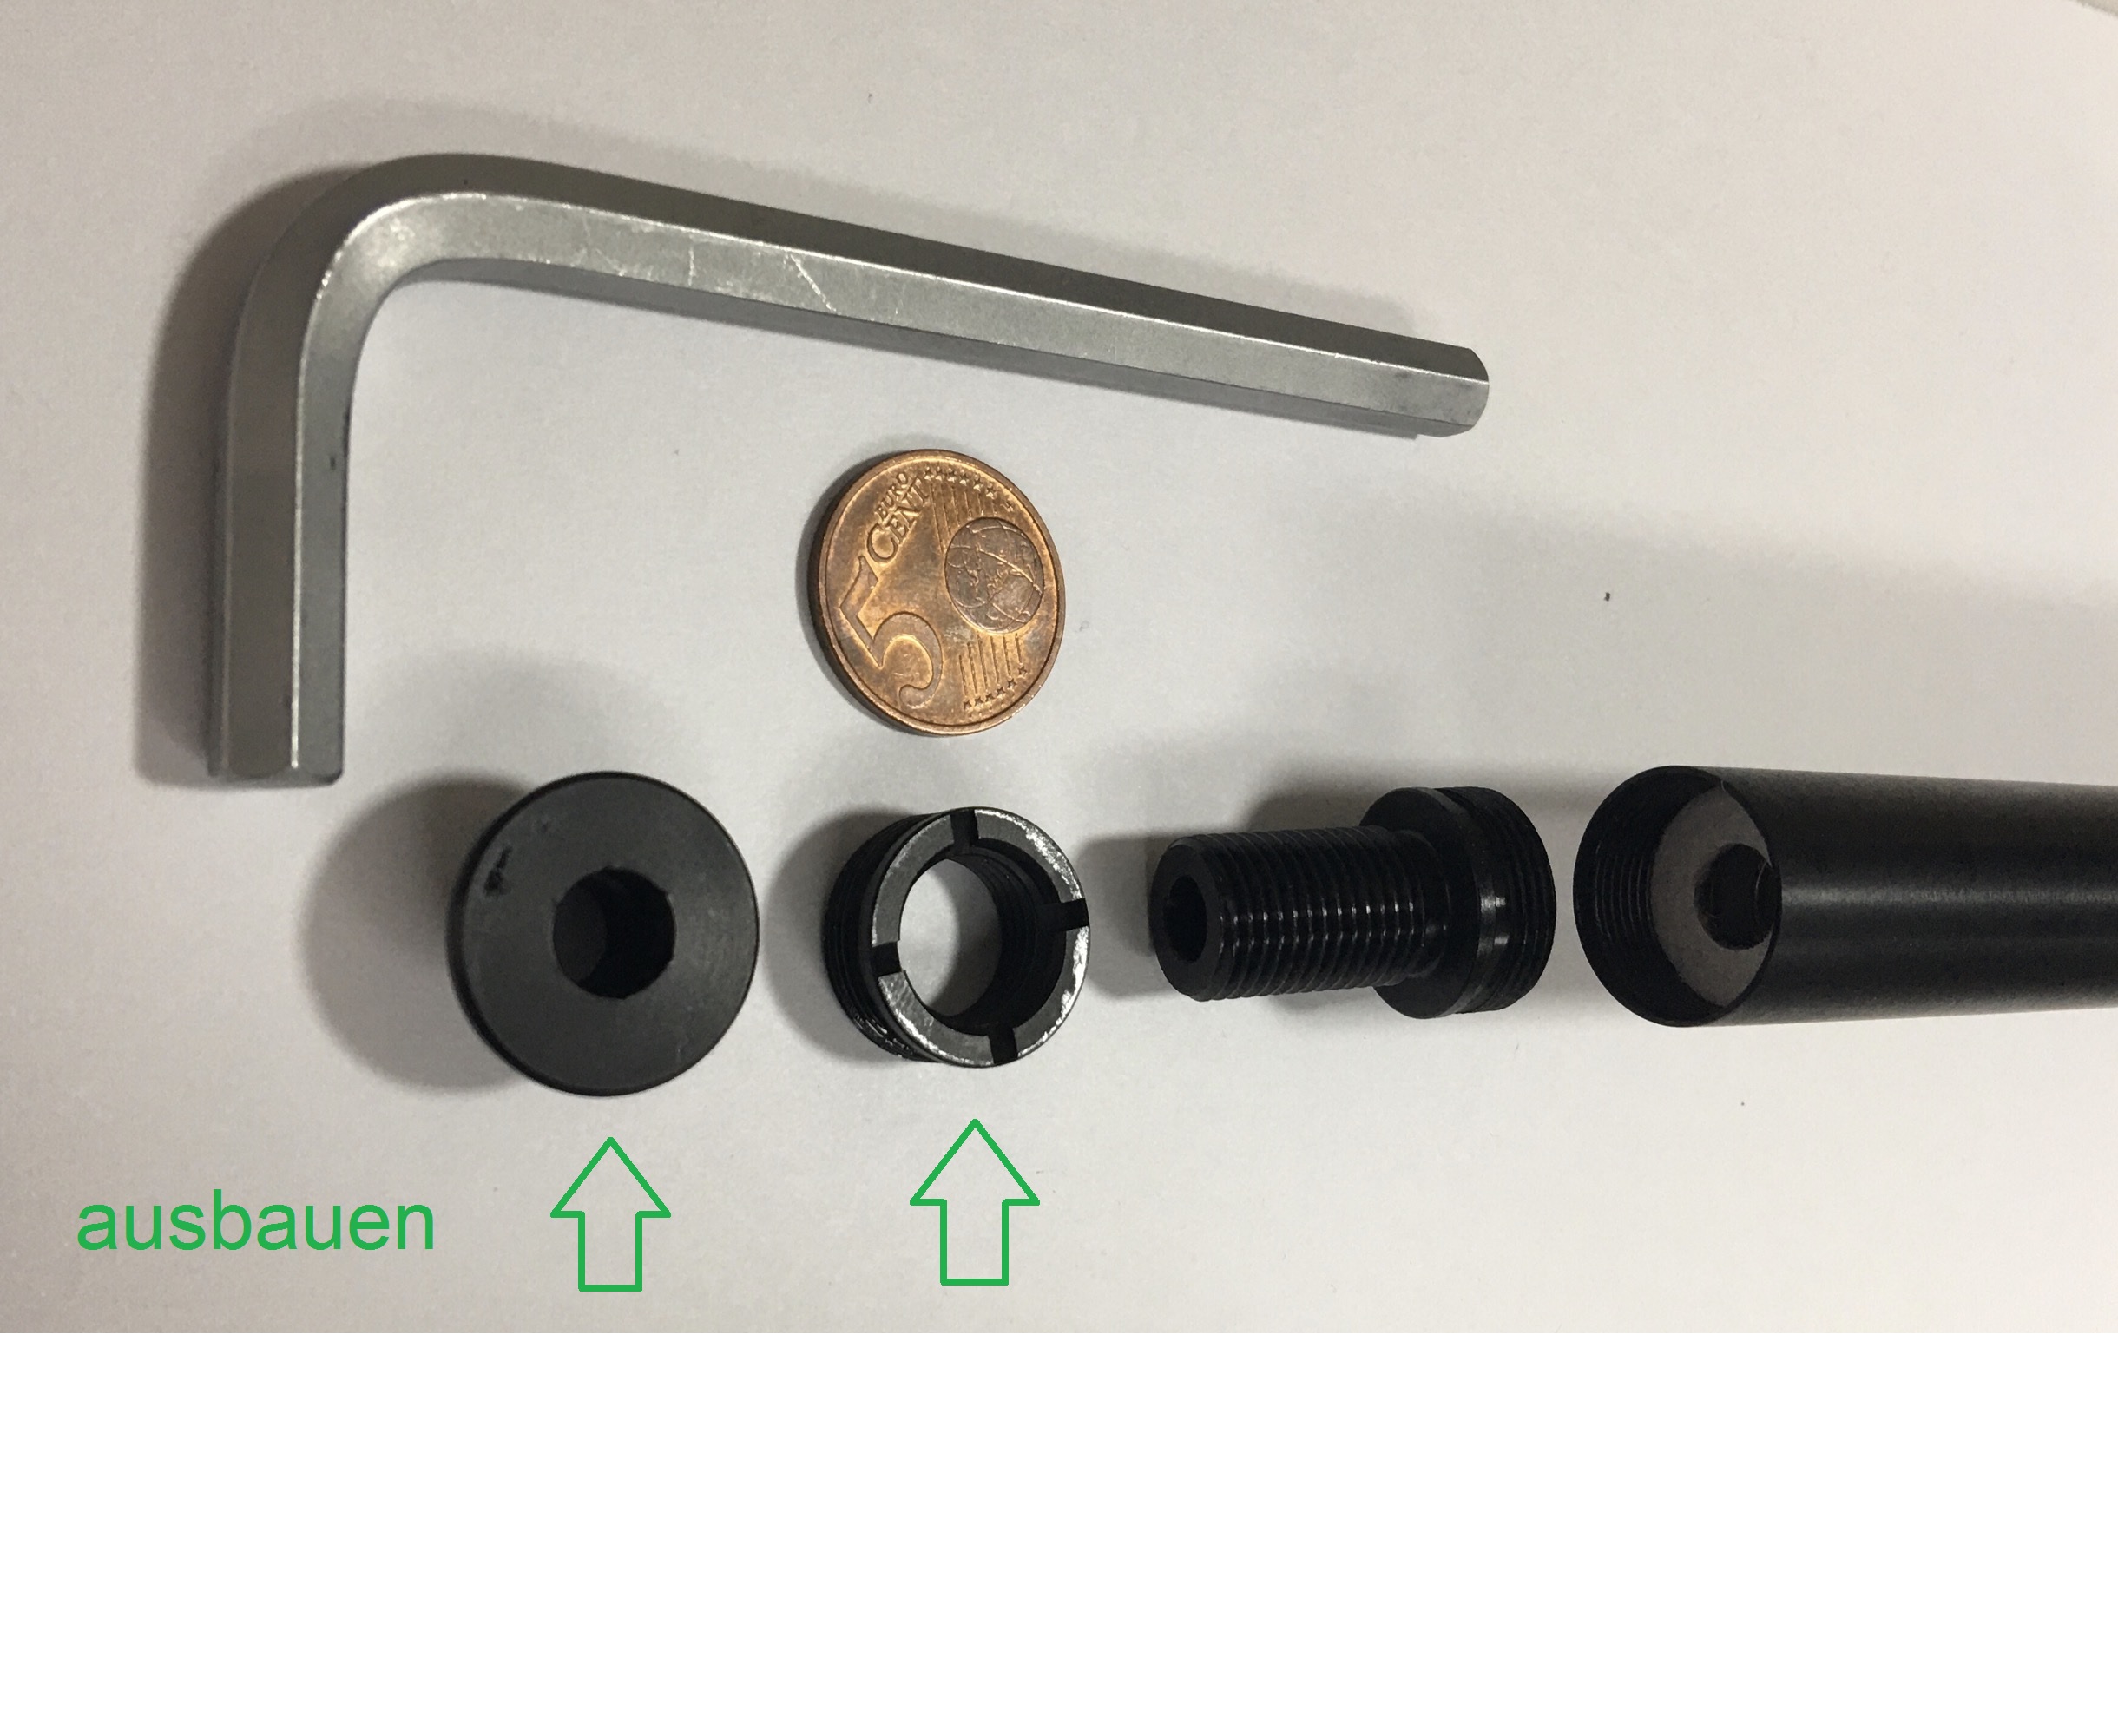 Um den Adapter einzusetzen, muss die Deckplatte mit dem Gewindering aus dem Laufmantel geschraubt werden. Dafür ist ein <a href=1155570.htm>Inbusschlüssel 7 mm </a> erforderlich. Mit einer Münze kann man den Gewindering lösen.